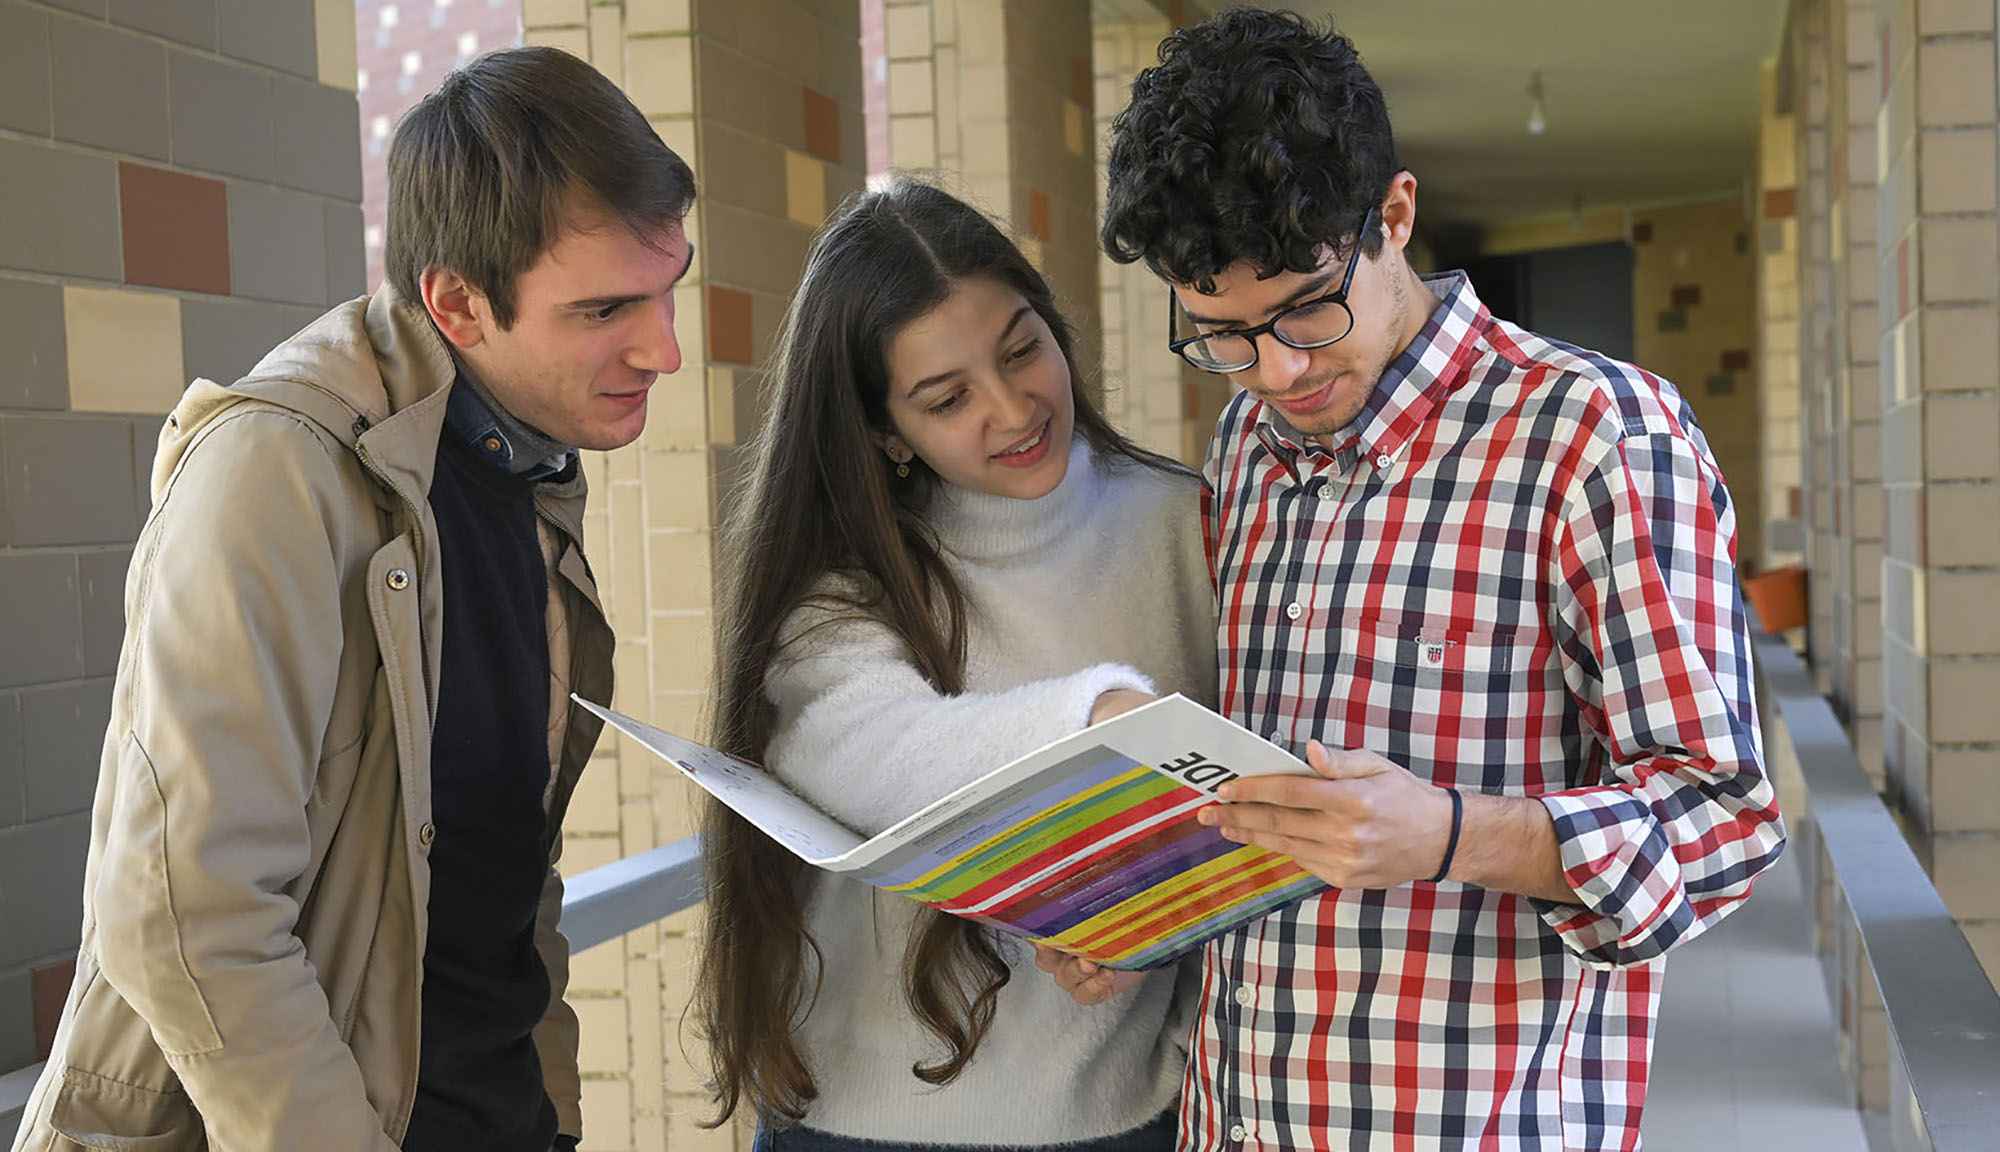 Image U.Porto Students